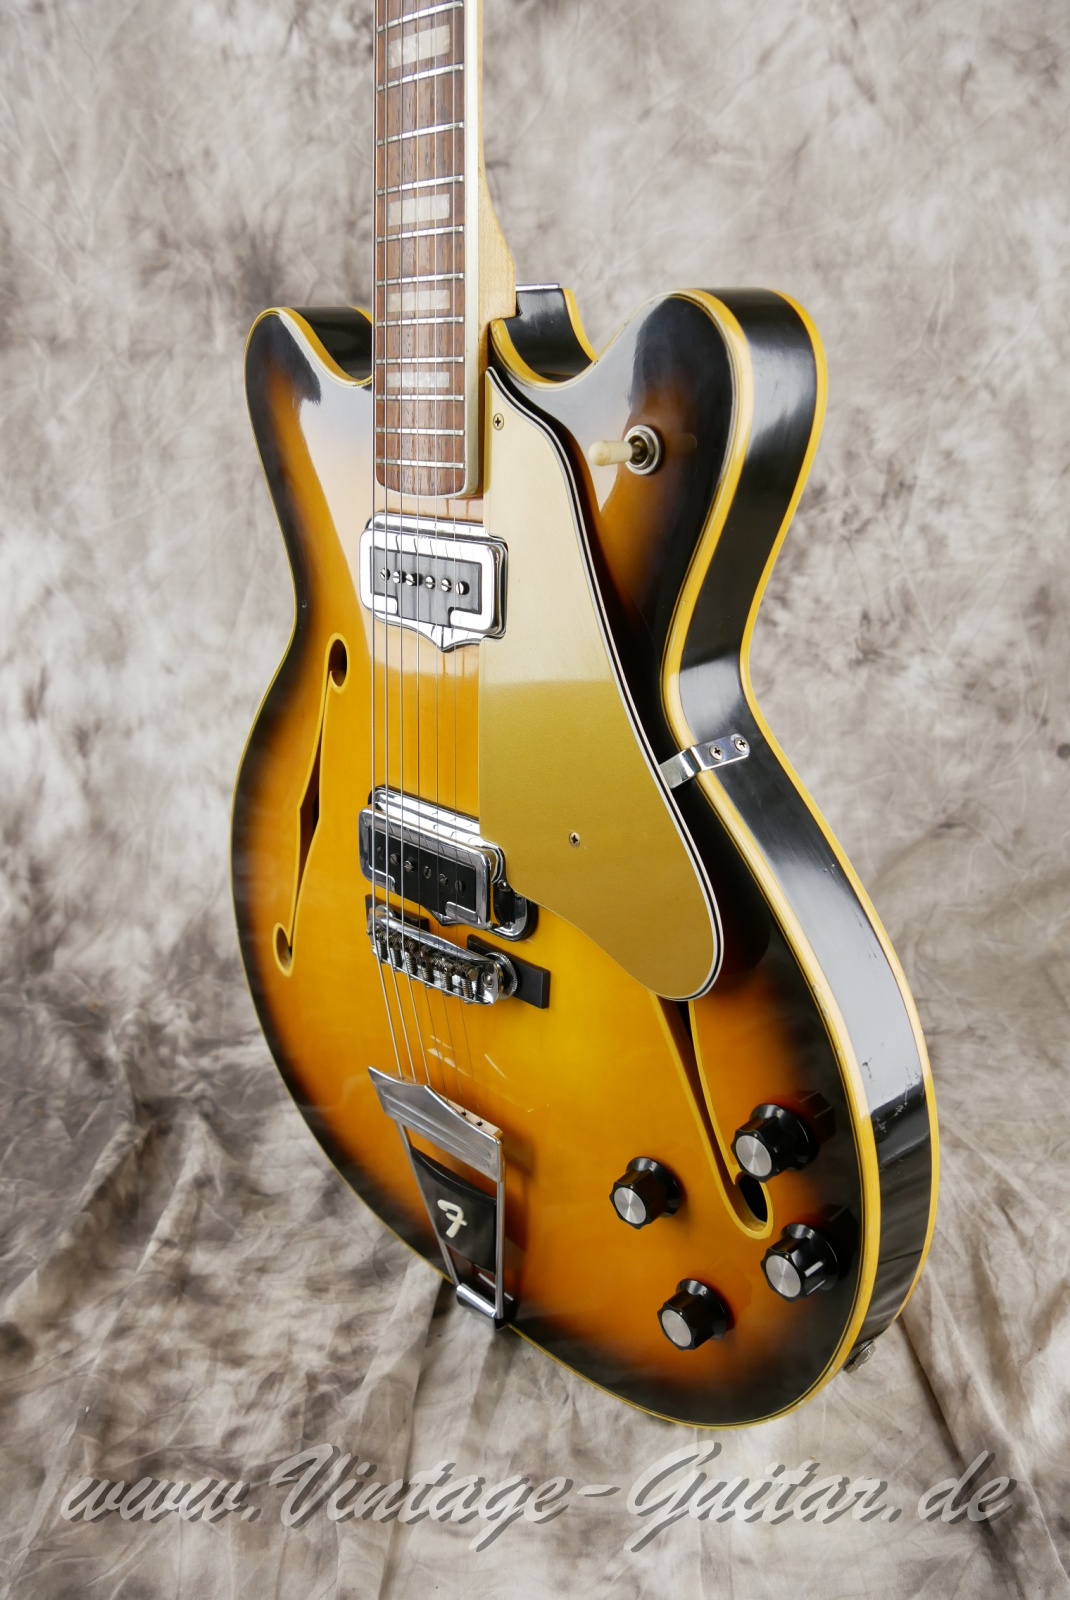 Fender-Coronado-II-1966-USA-sunburst-010.jpg